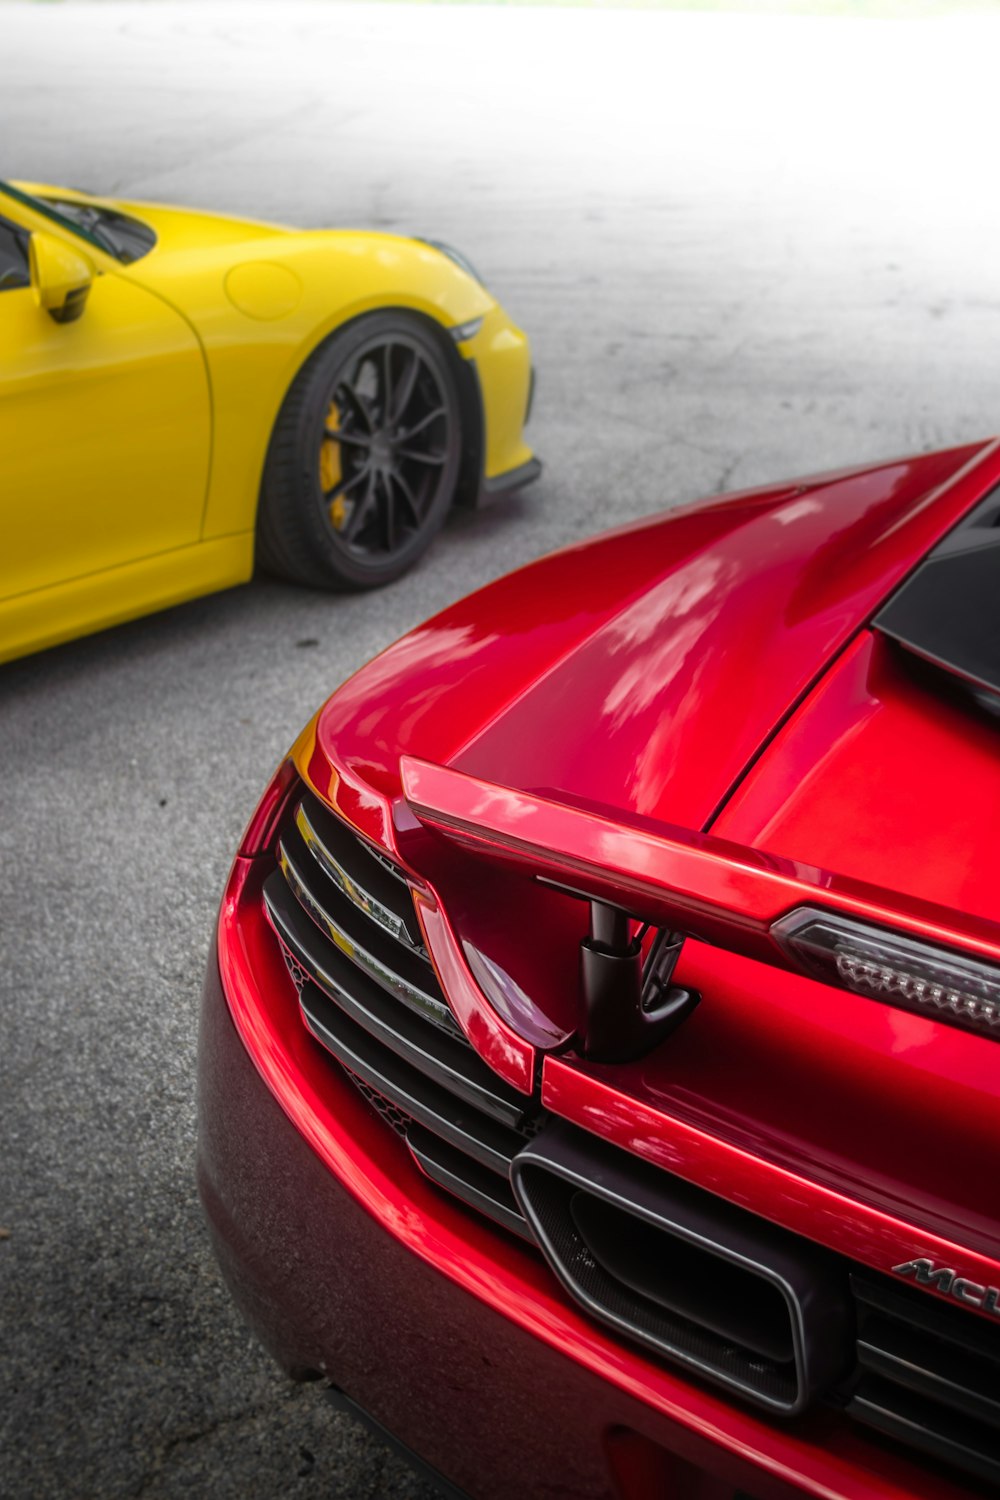 Une voiture de sport rouge garée à côté d’une voiture de sport jaune